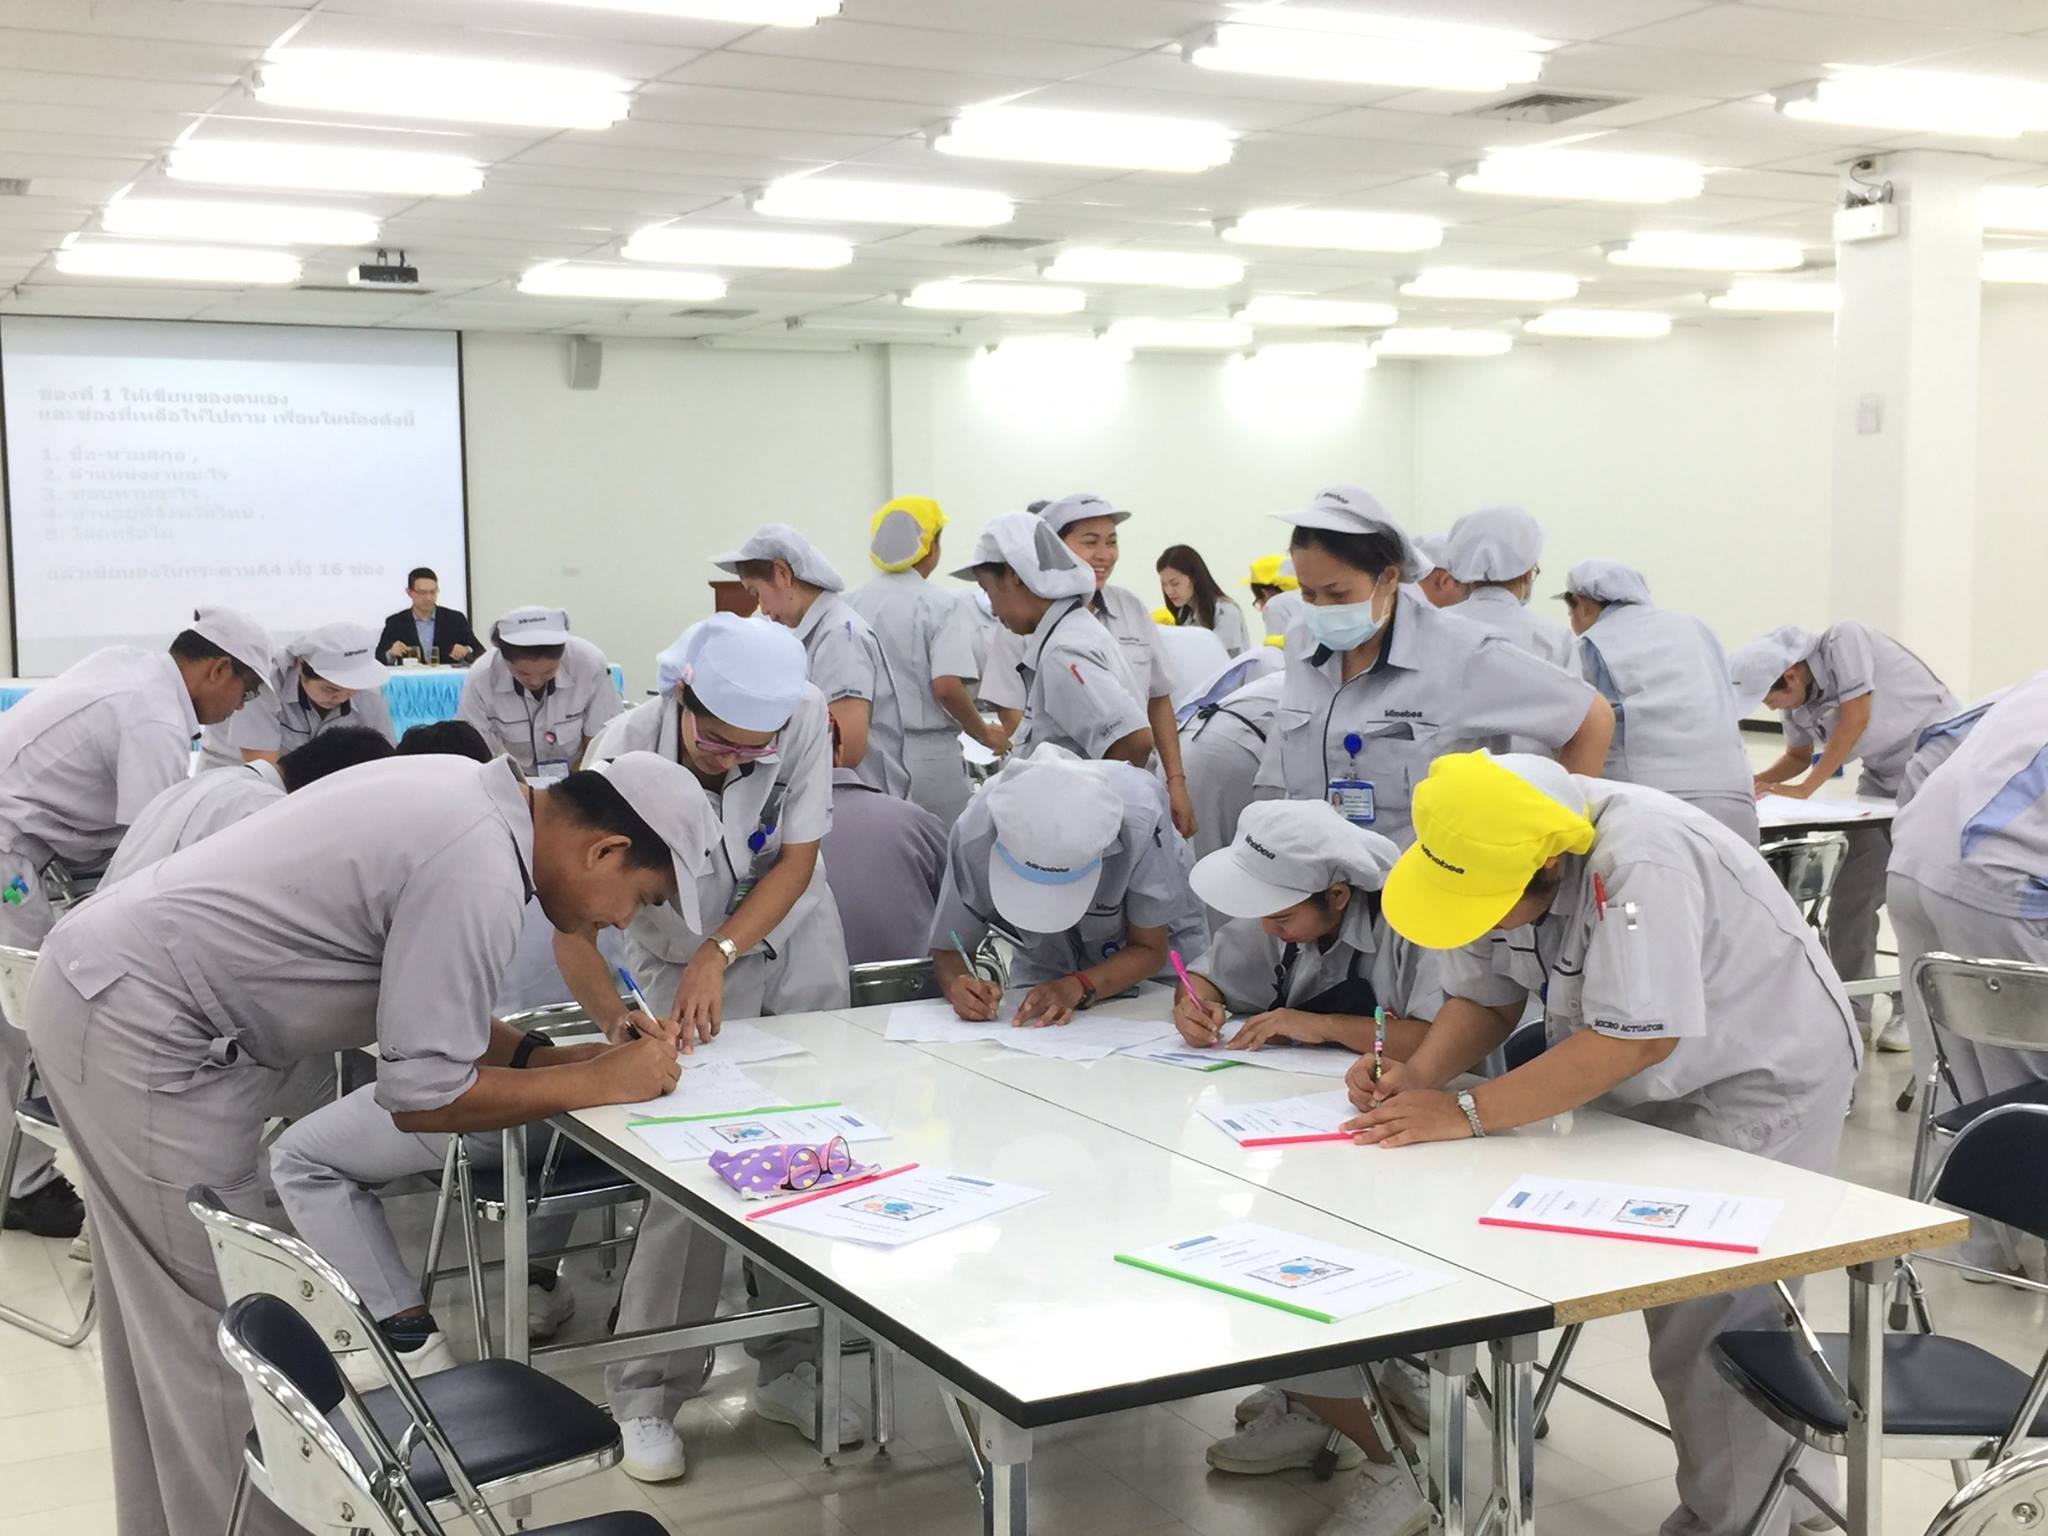 NMB-Minebea Thai : เทคนิคการบริหารจัดการการเป็นพี่เลี้ยง รุ่นที่3